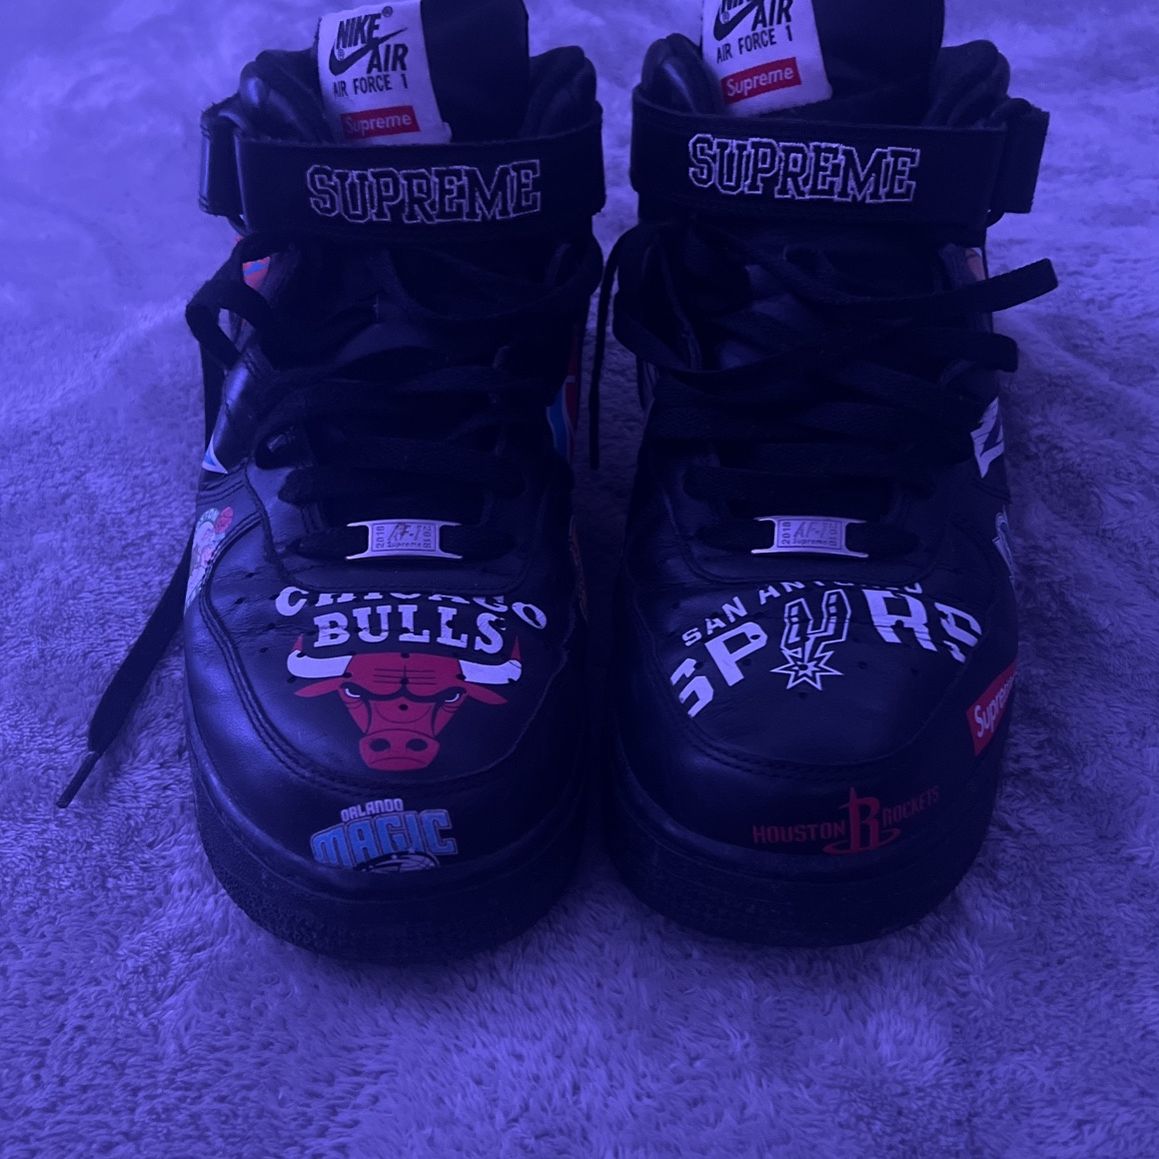 NBA Supreme shoes